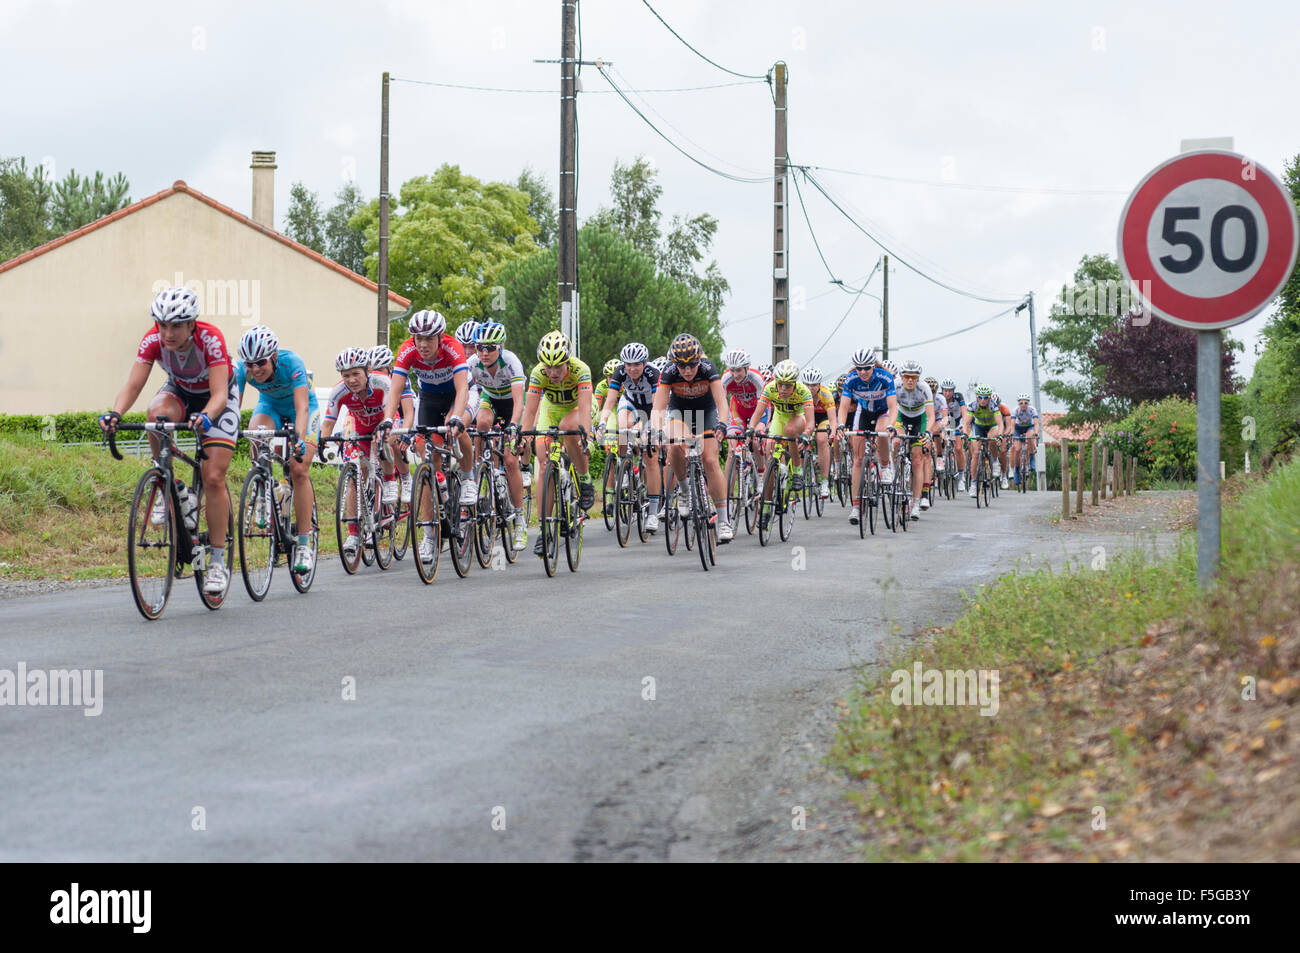 Route de France Feminine, Cycling Race, Mouilleron-en-Pareds Stock Photo